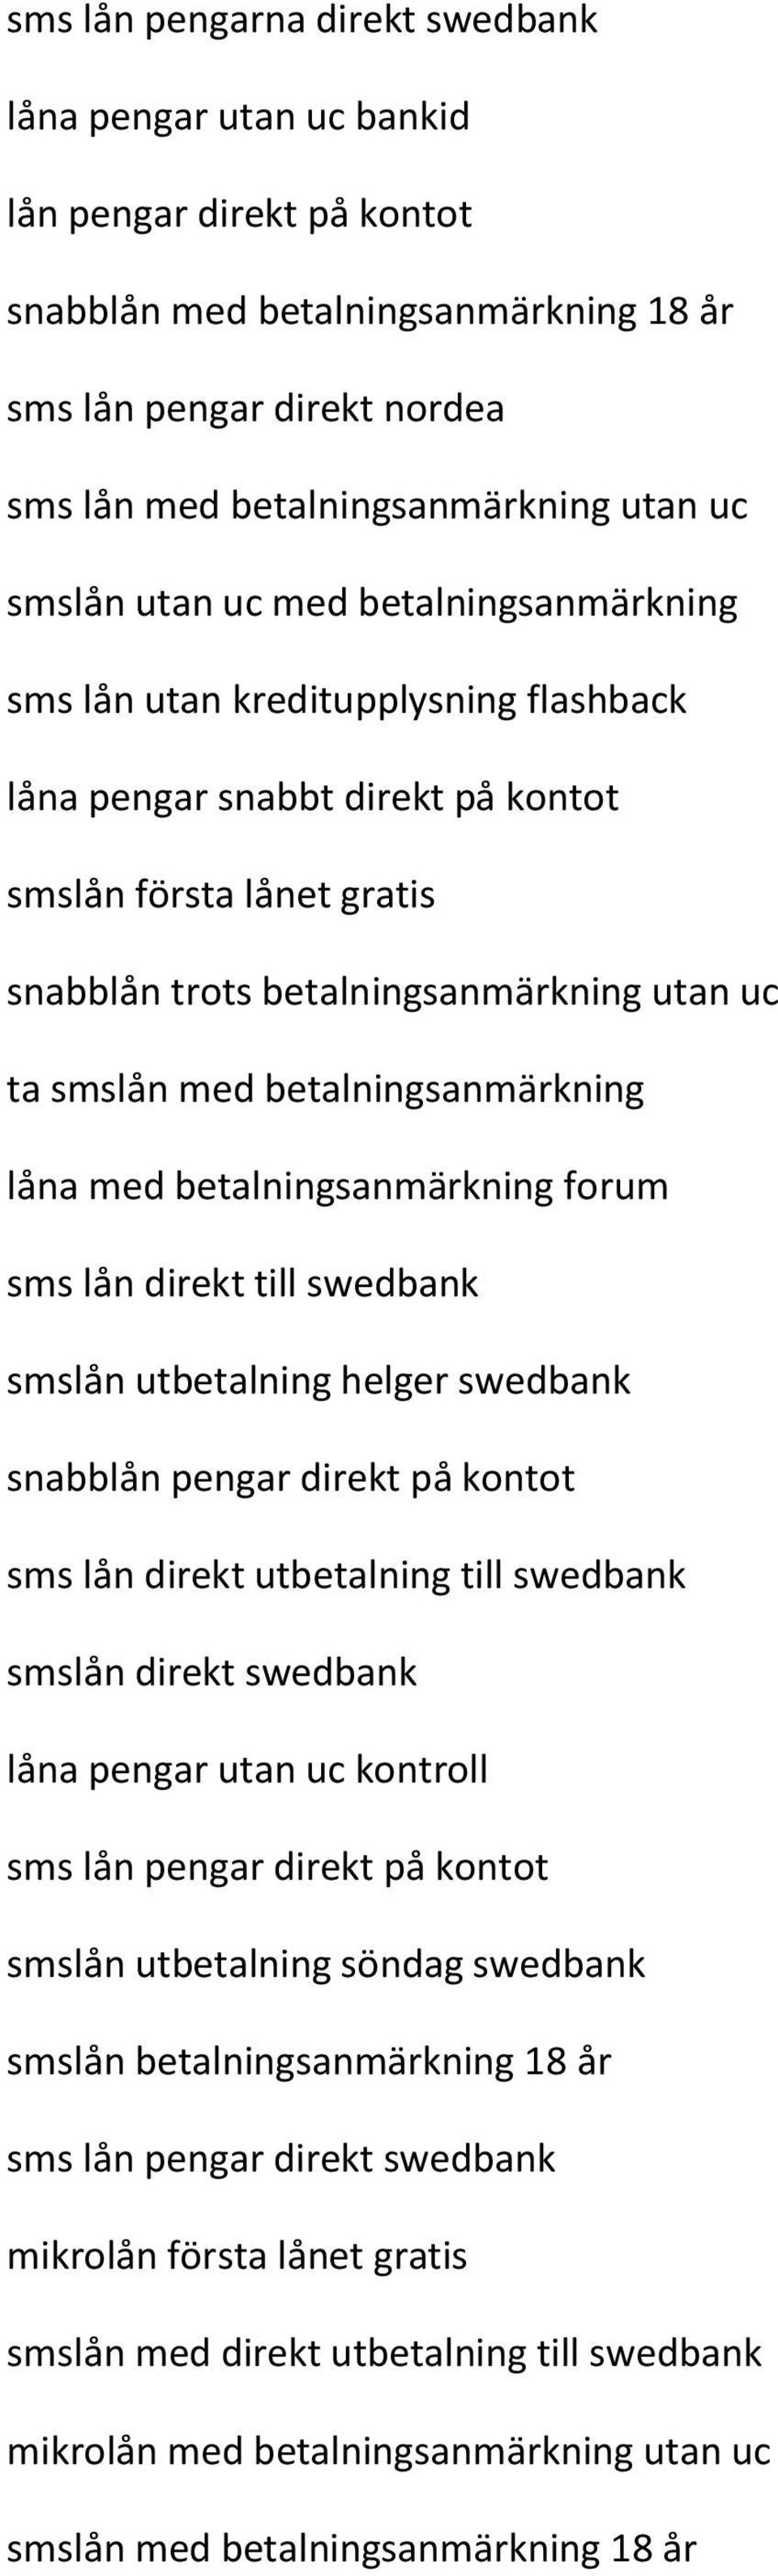 Lånar sms lån pengar direkt swedbank som